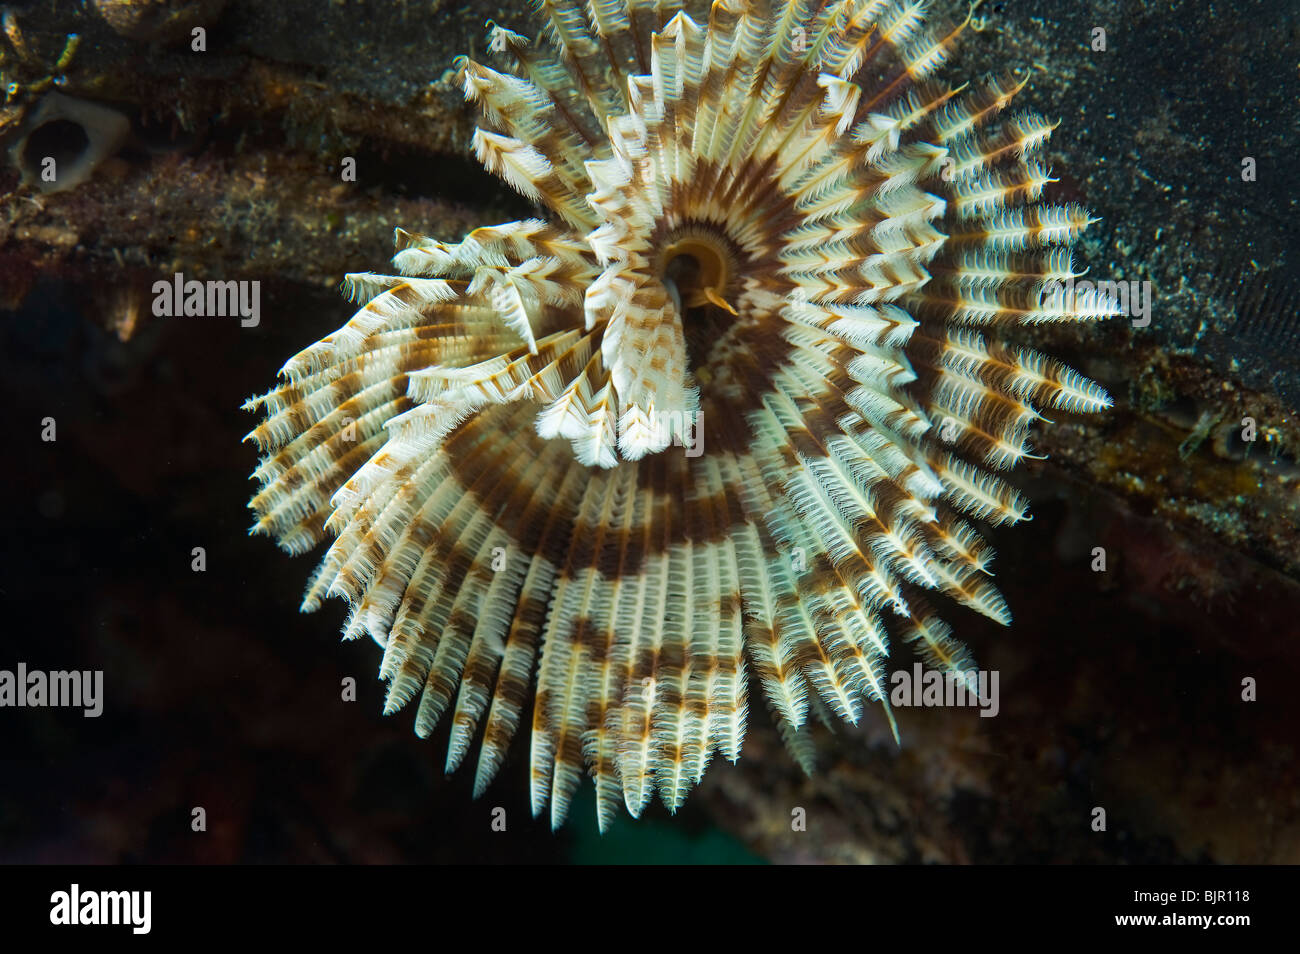 Feather Star Featherstar Comanthus sp Gorgonien Peitschenkorallen Riff Malapascua unter Wasser Meer MALAPASCUA Inseln Unterwasser wild Stockfoto